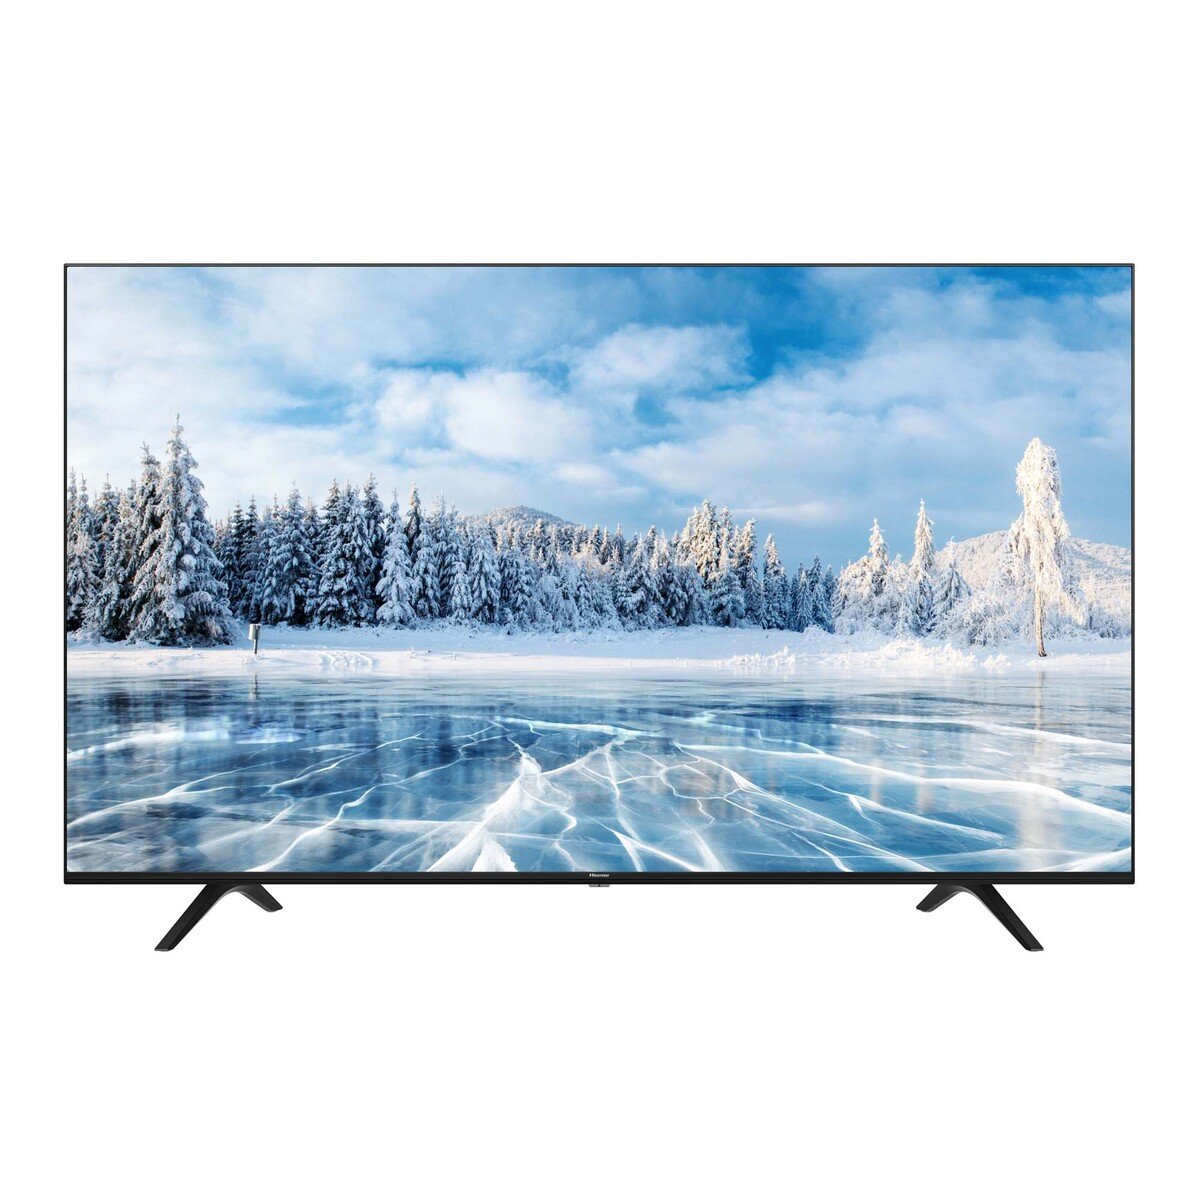 Hisense 4K Ultra HD Smart LED TV 55A7103F 55"